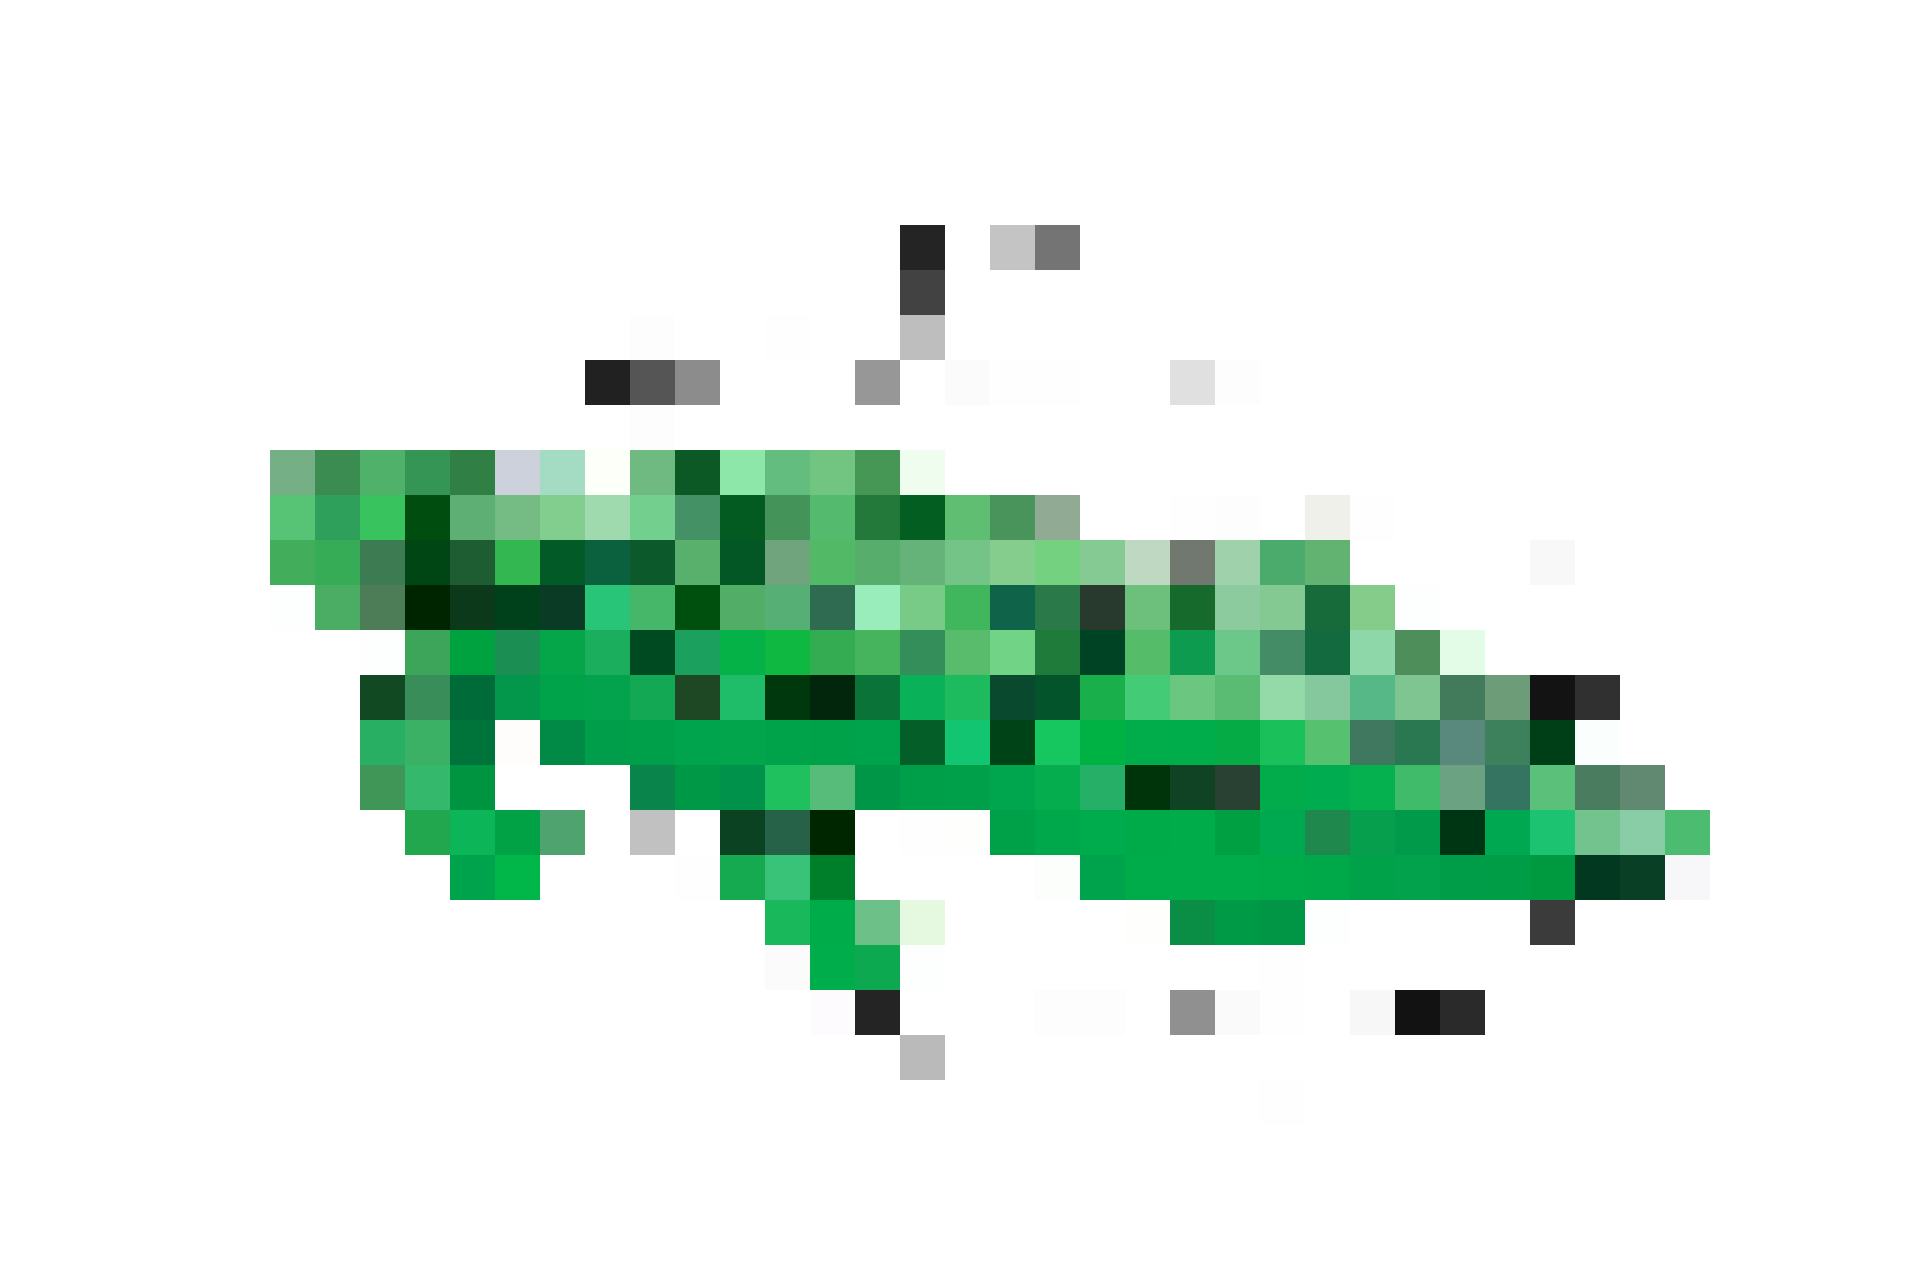 Cavalca il coccodrillo: materassino gonfiabile Intex alligatore, fr. 16.95, da Jumbo.